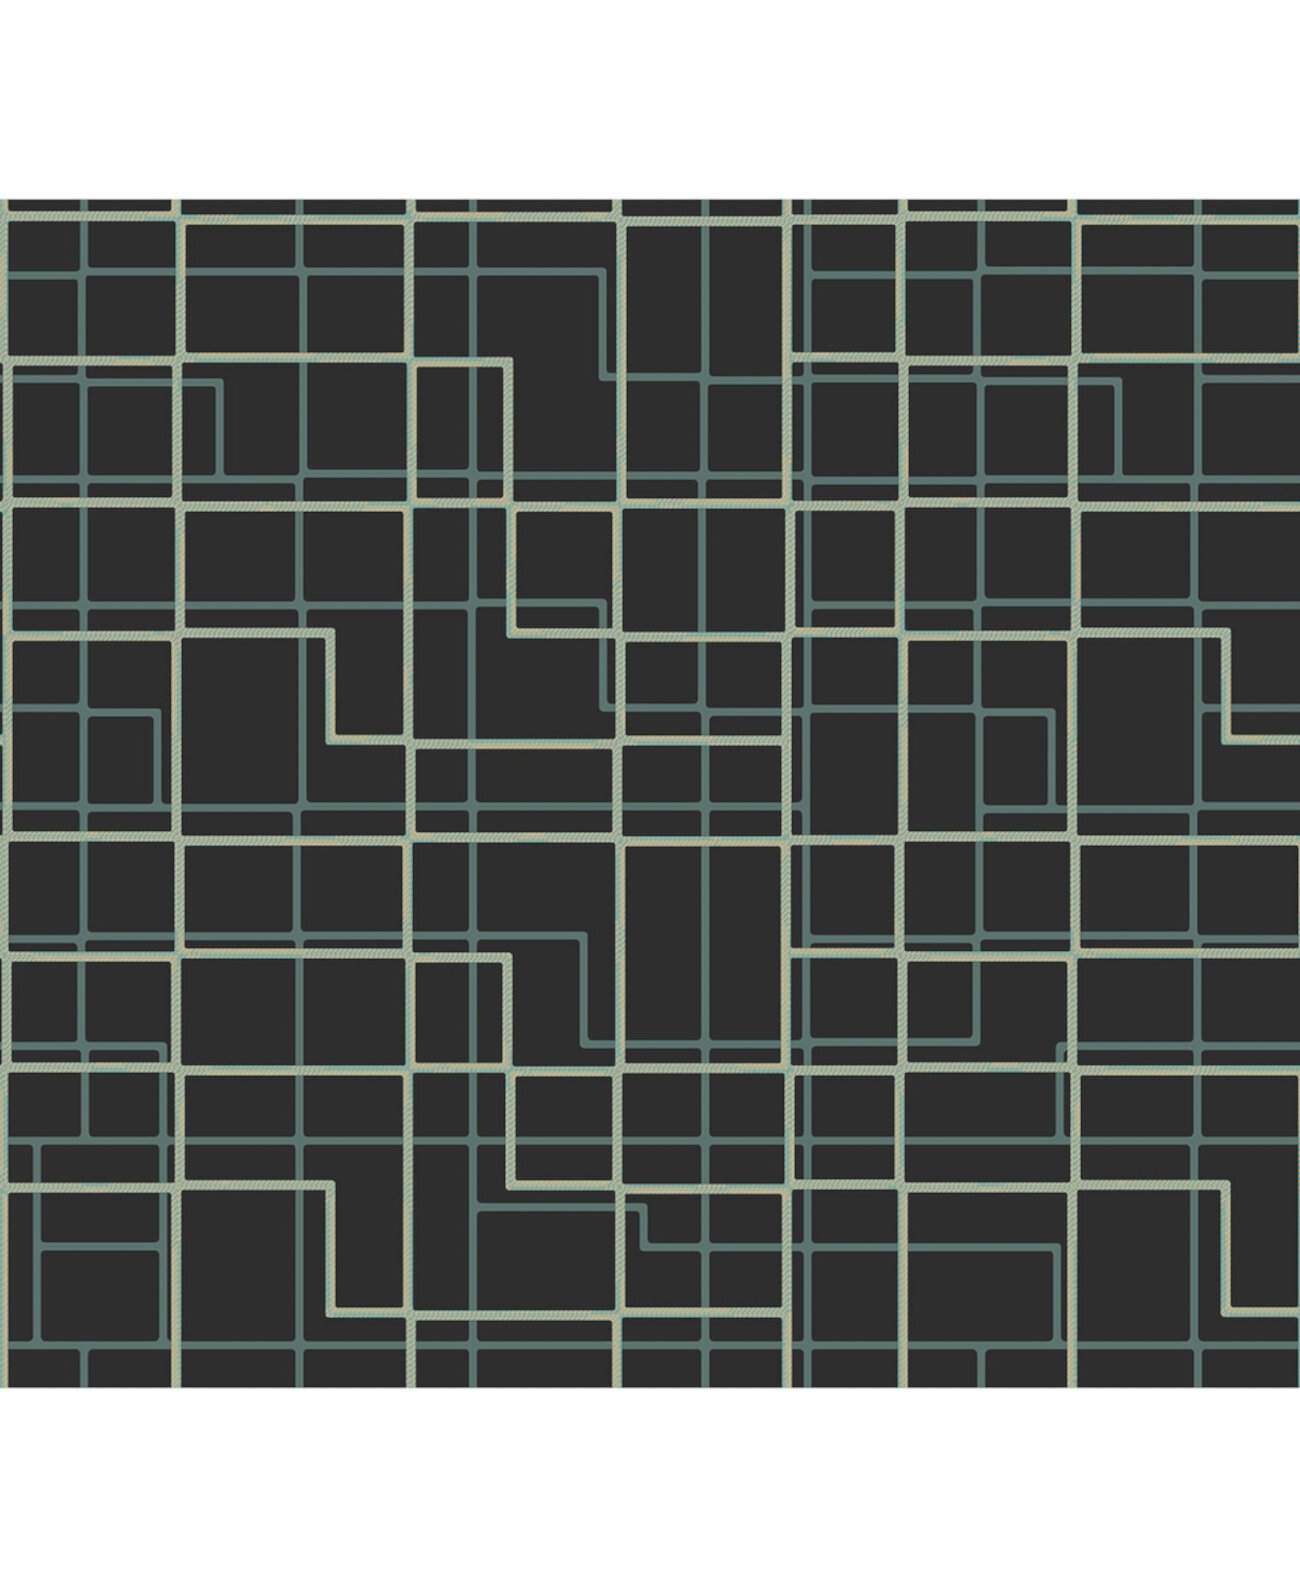 27 "x 396" Манильские коричневые обои с геометрическим рисунком Sirpi